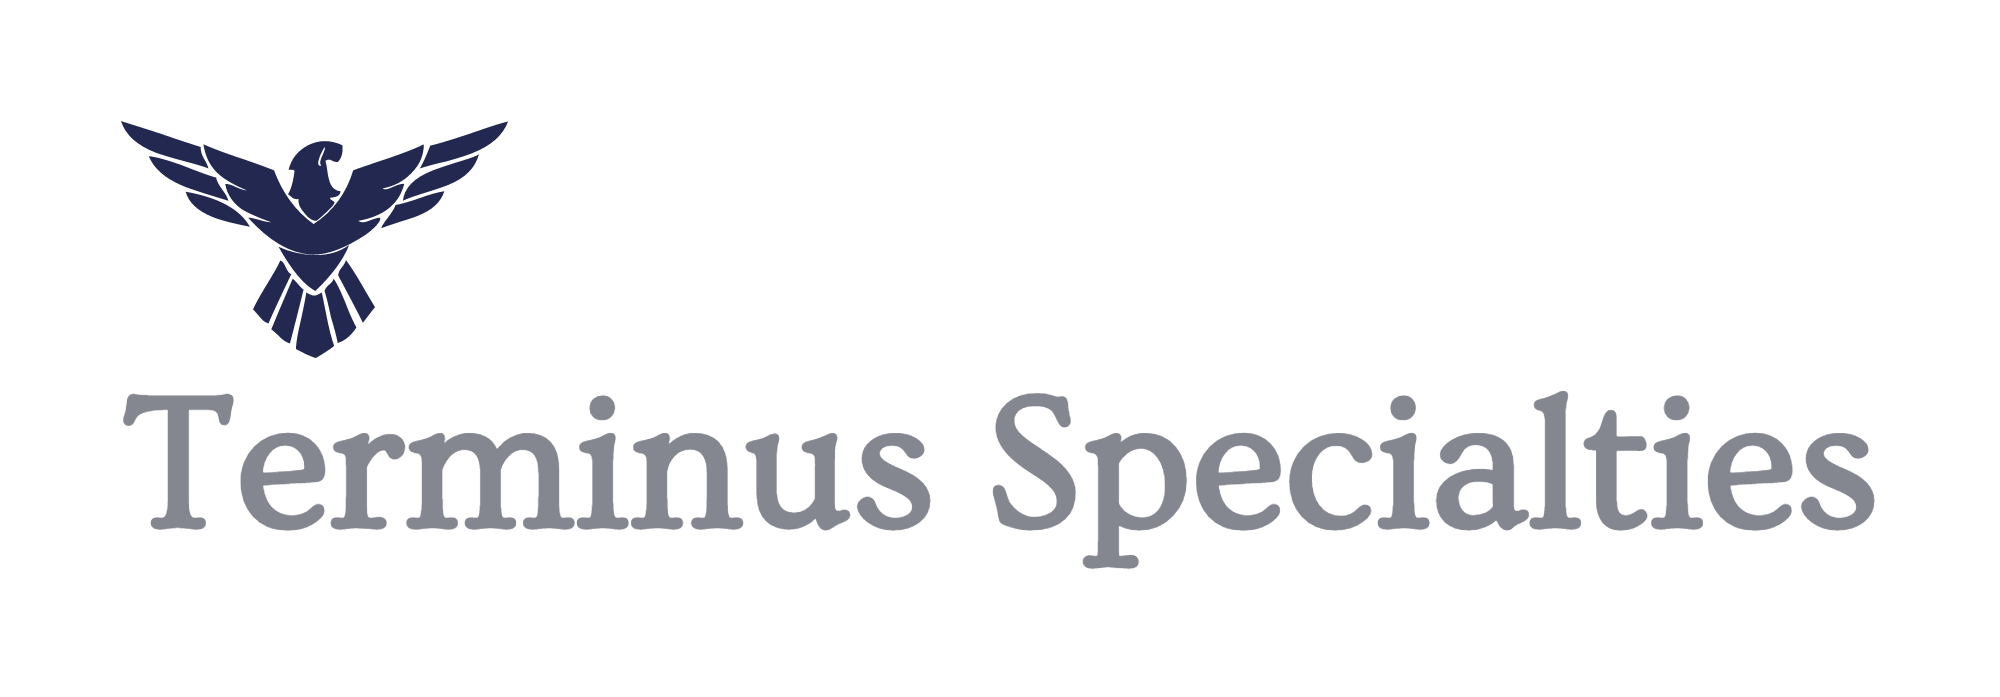 Terminus Specialties, Inc